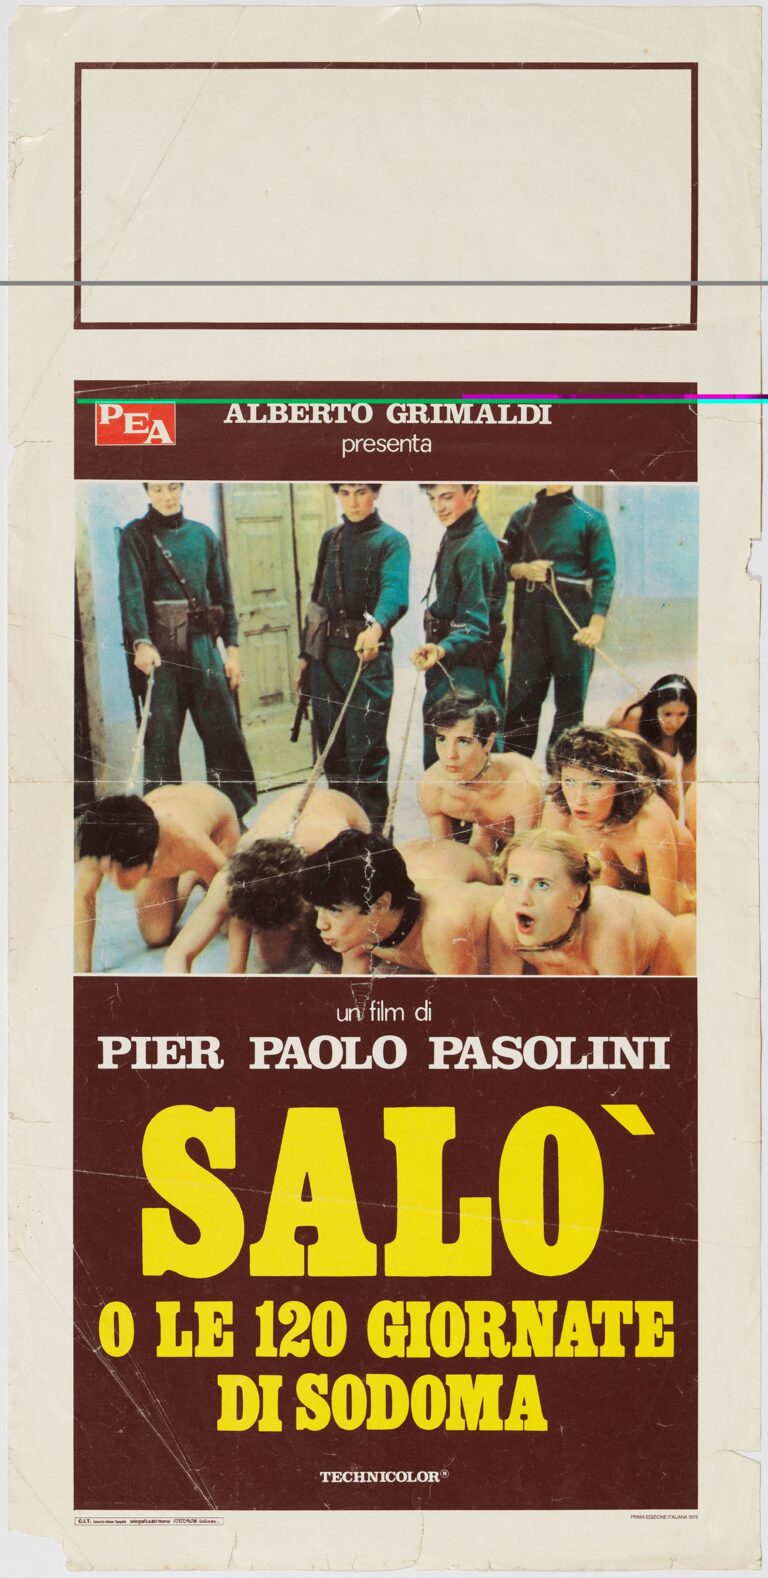 Pier Paolo Pasolini, Salò o le 120 giornate di Sodoma, 1975. Courtesy of Frederic Amat, Barcellona